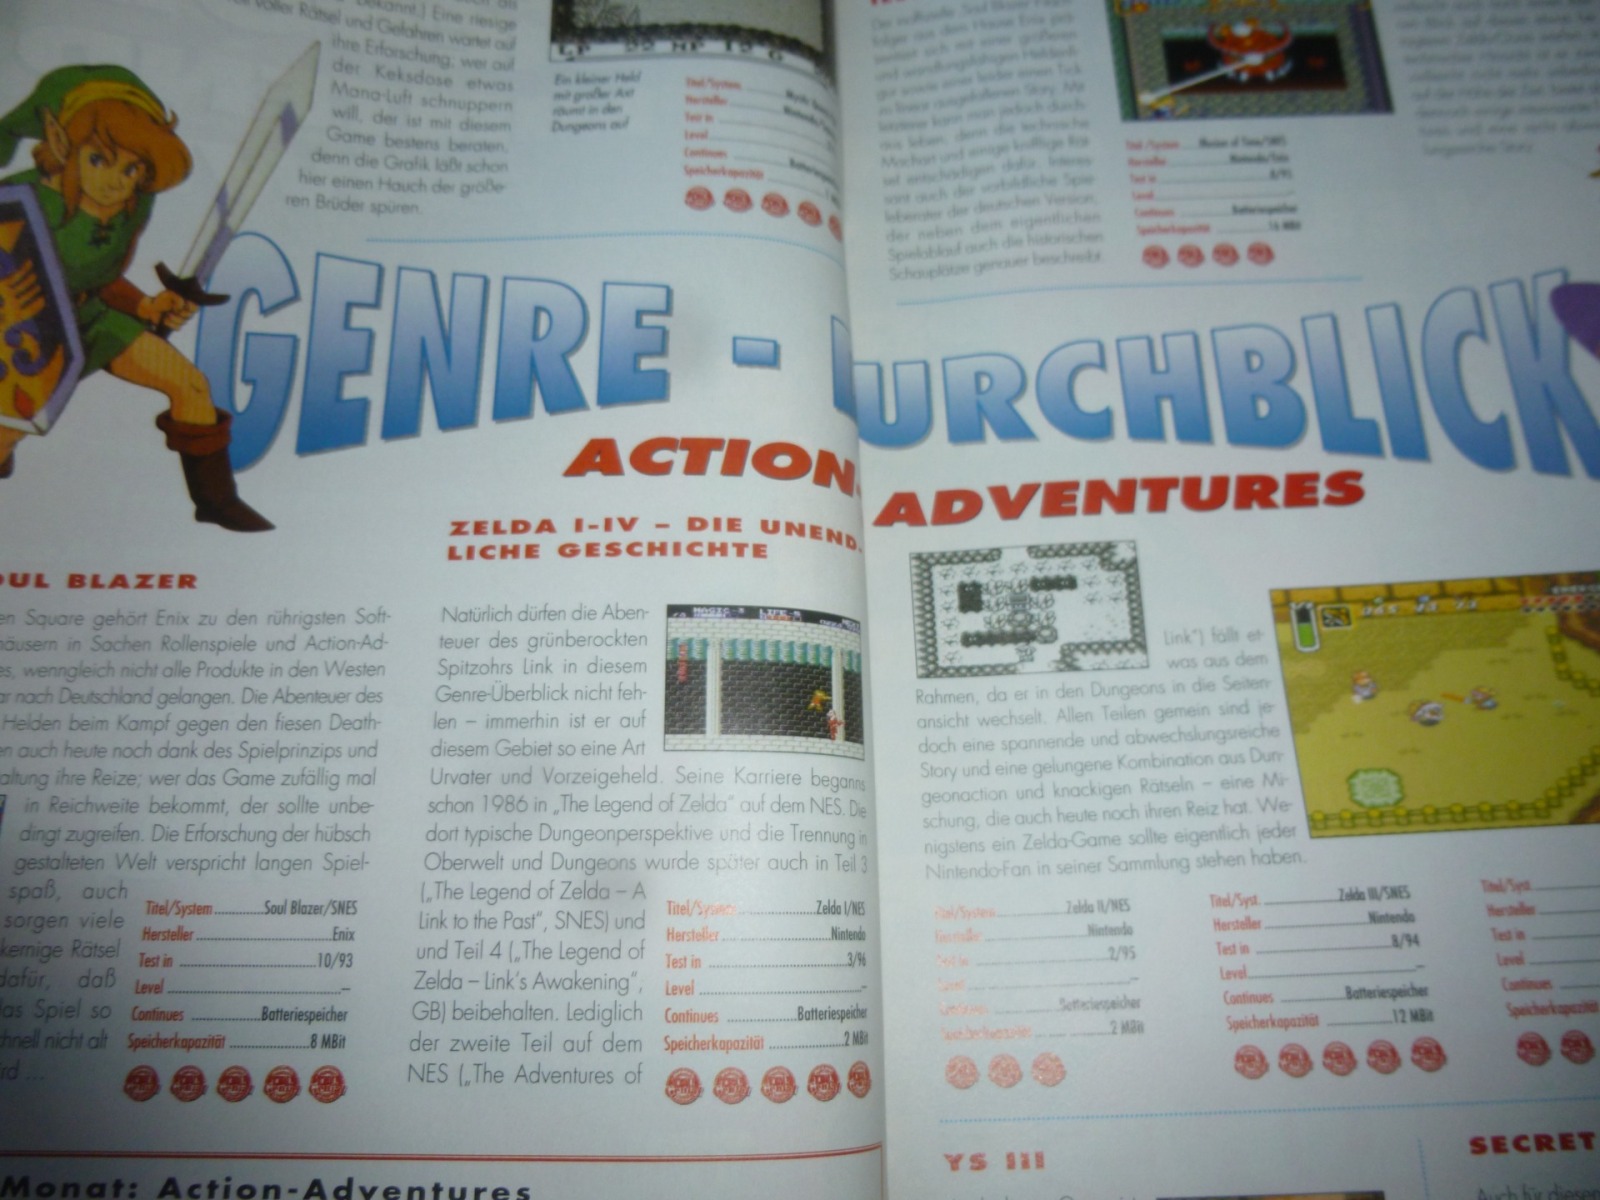 TOTAL Das unabhängige Magazin - 100% Nintendo - Ausgabe 3/96 1996 21